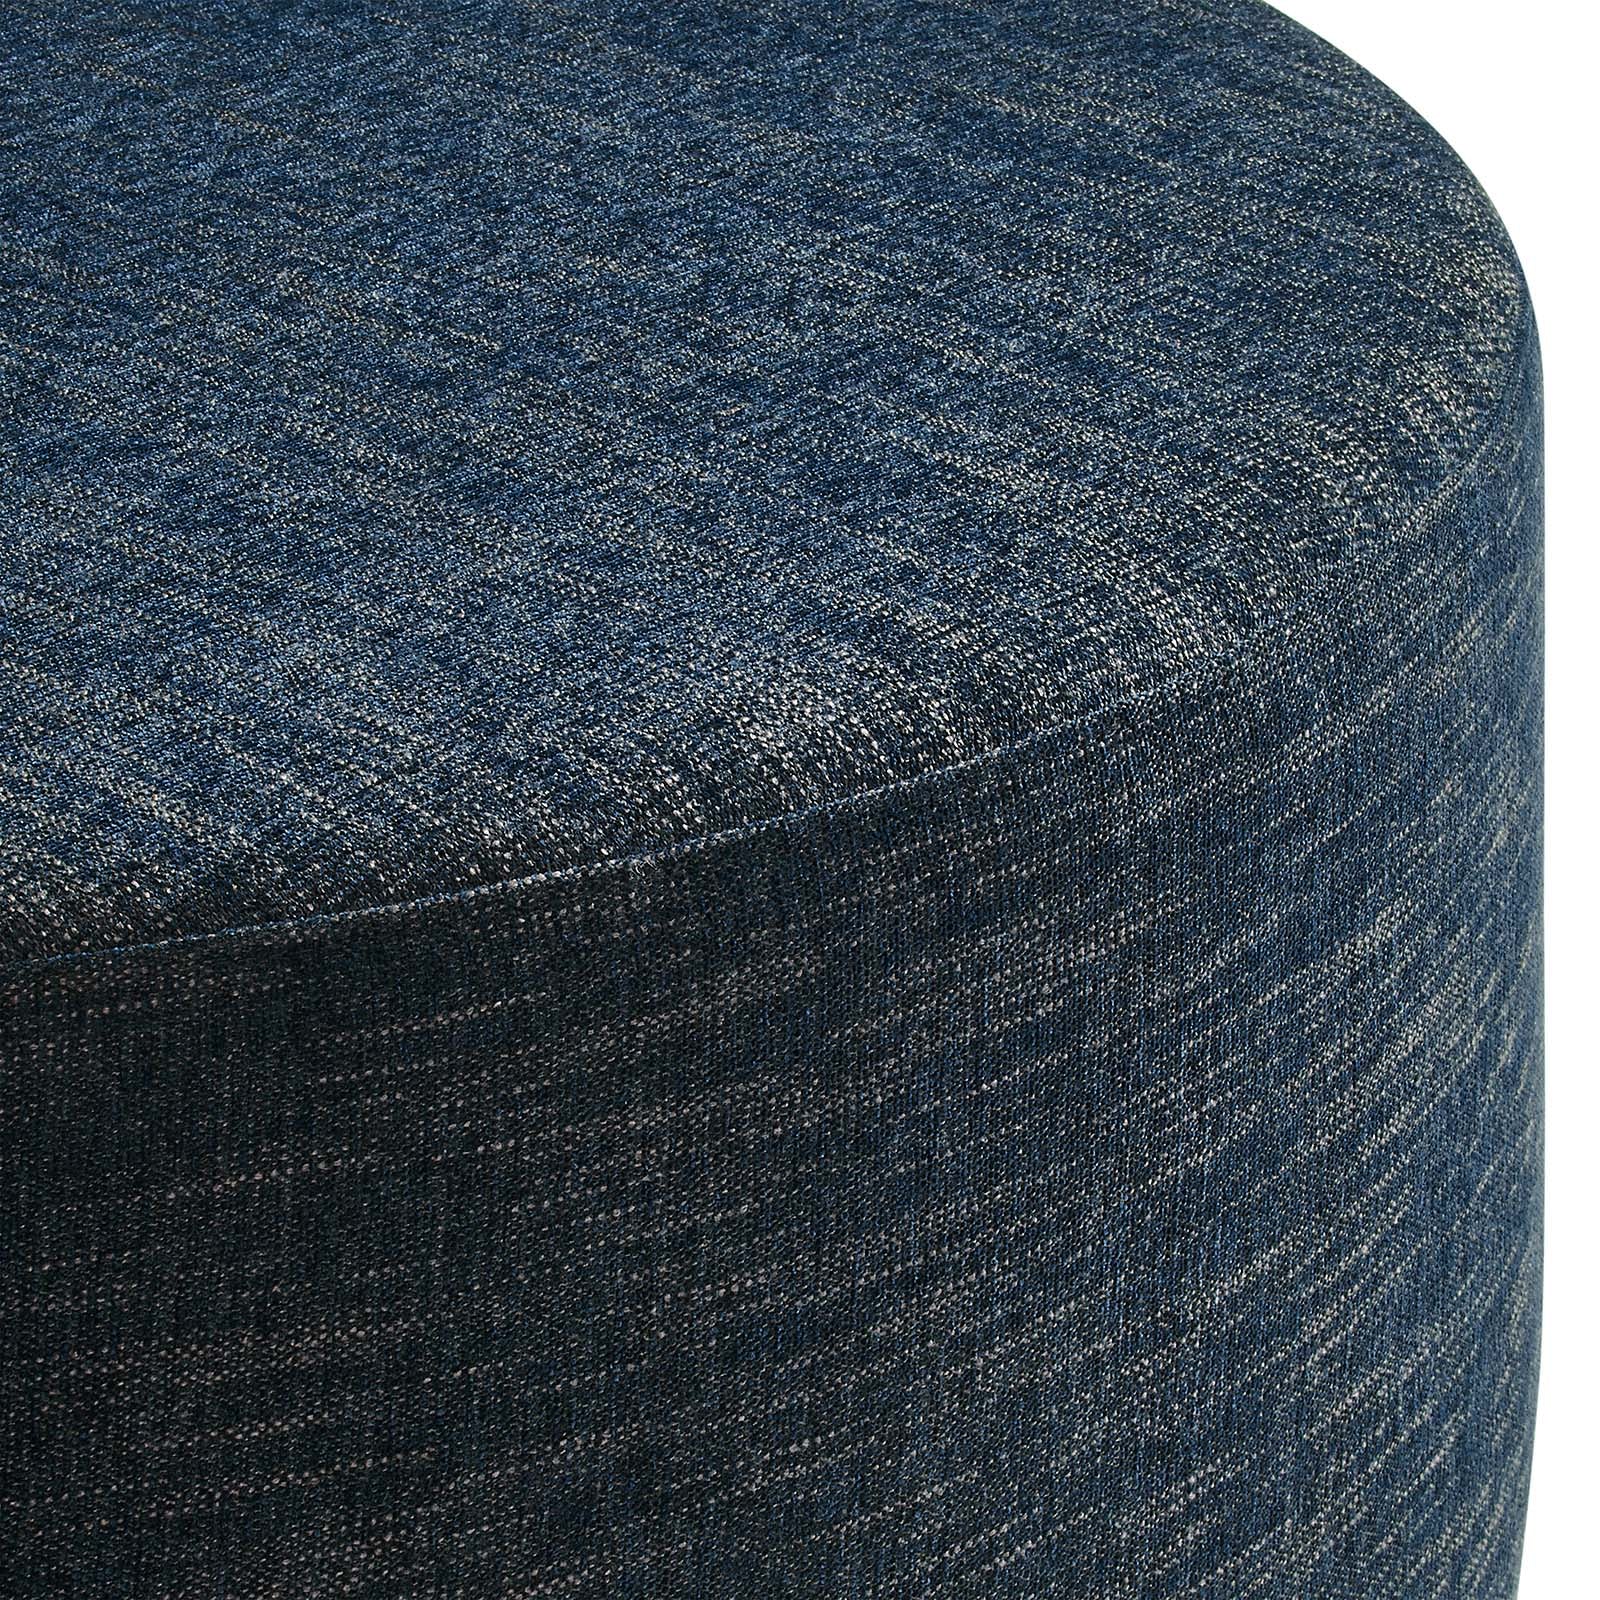 Callum Large 38" Round Woven Heathered Fabric Upholstered Ottoman-Ottoman-Modway-Wall2Wall Furnishings